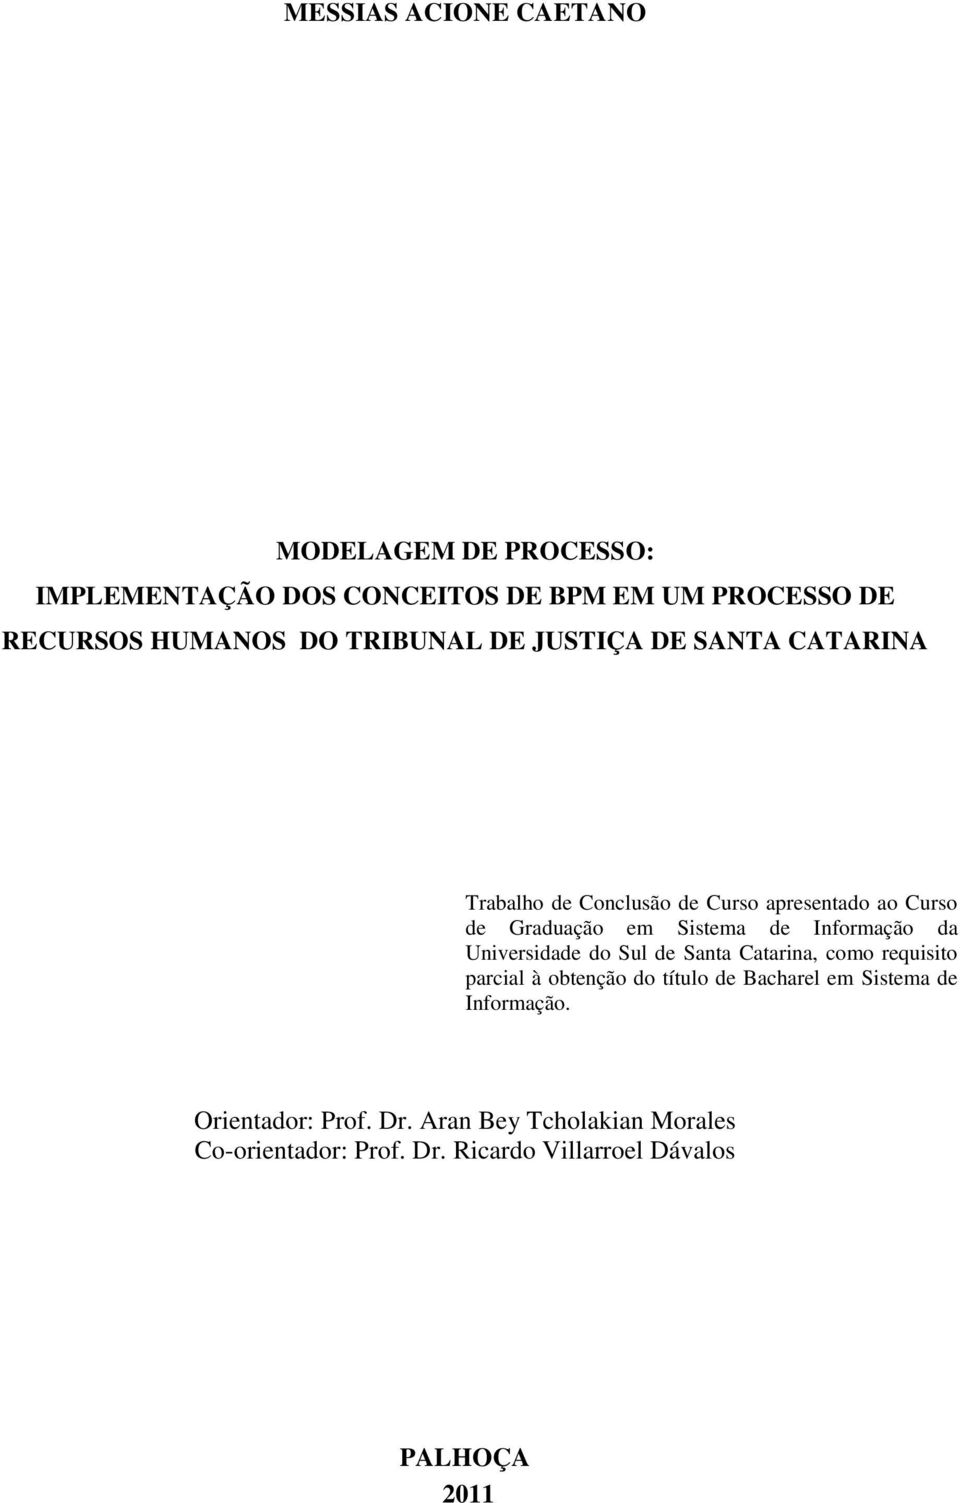 Informação da Universidade do Sul de Santa Catarina, como requisito parcial à obtenção do título de Bacharel em Sistema